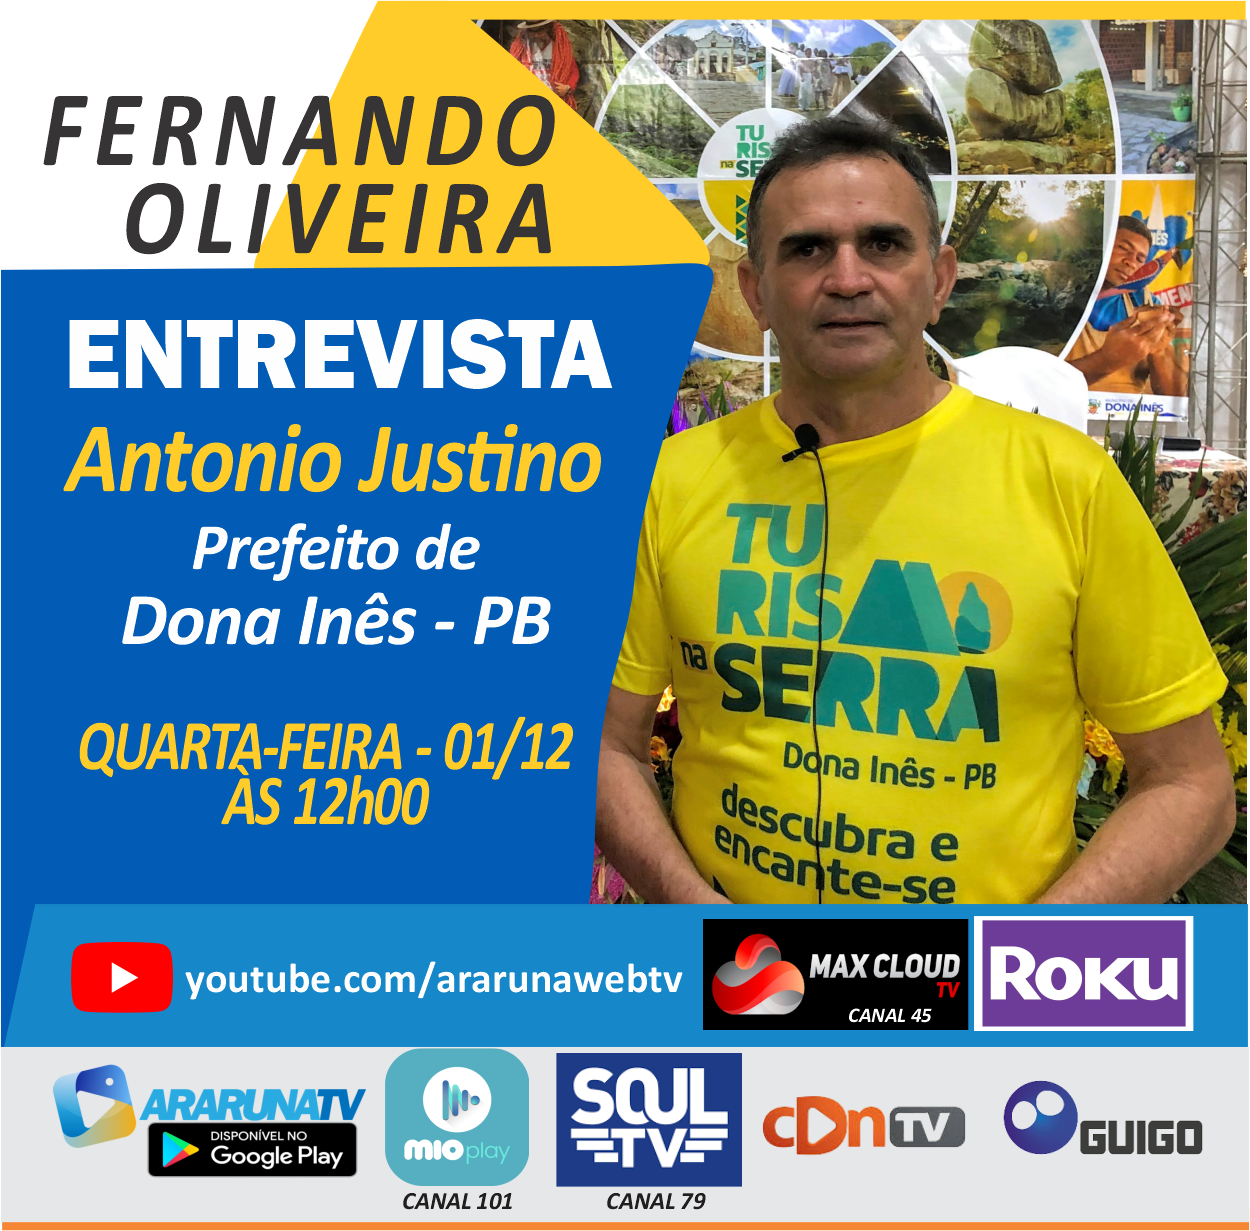 Prefeito de Dona Inês, Antonio Justino será entrevistado na ArarunaTV nesta quarta-feira